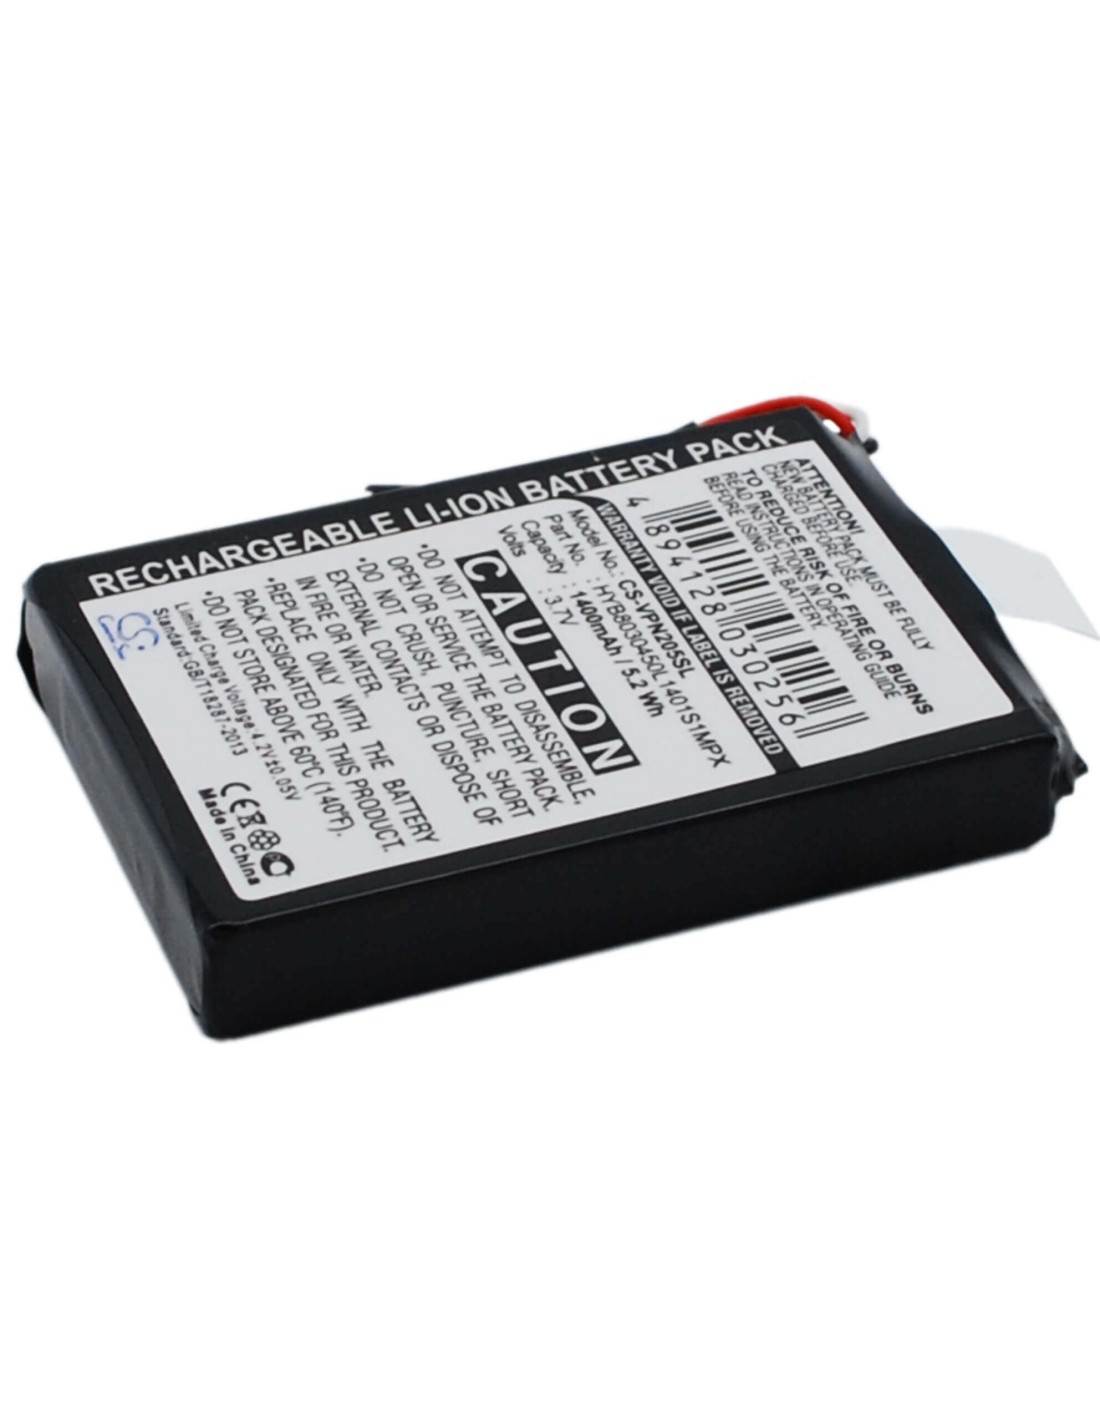 Battery for Vdo Dayton Ma3060, Pn1000, Pn2050 3.7V, 1400mAh - 5.18Wh